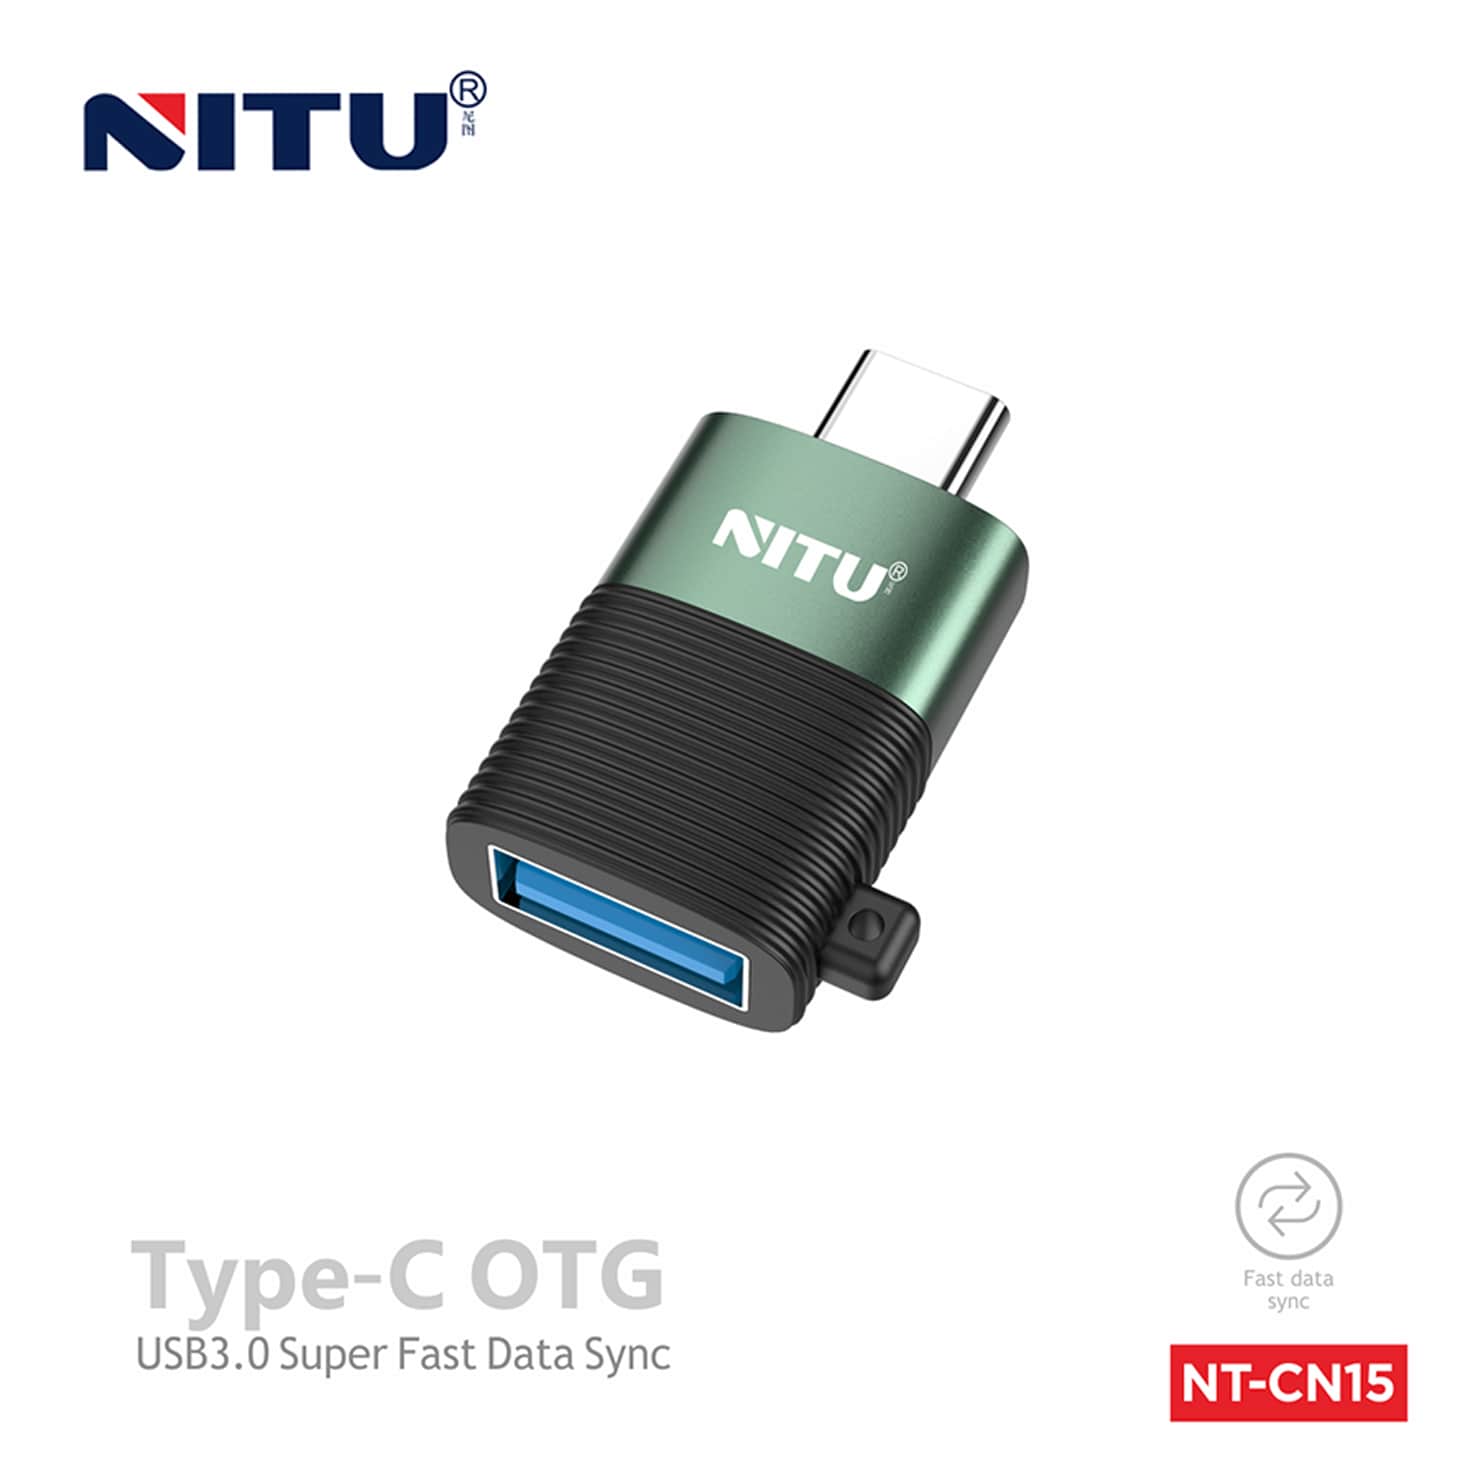 خرید تبدیل اوتجی تایپسی OTG NT-CN15| فروشگاه اینترنتی آرنیک موبایل